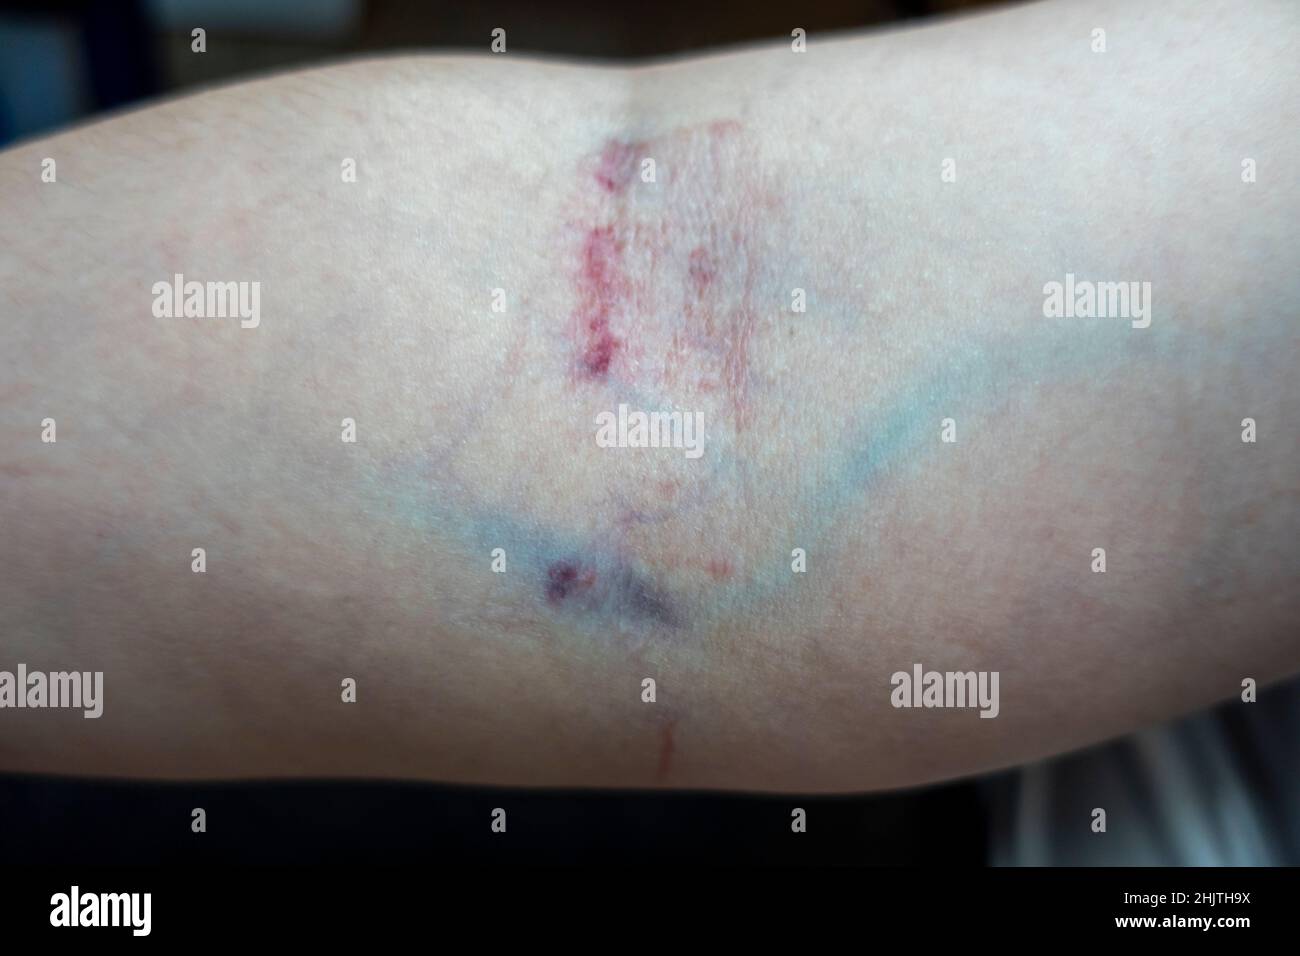 Vista de cerca del brazo de una mujer caucásica después de haber tomado sangre de la misma vena dos veces al día, causando irritación severa de la piel Foto de stock